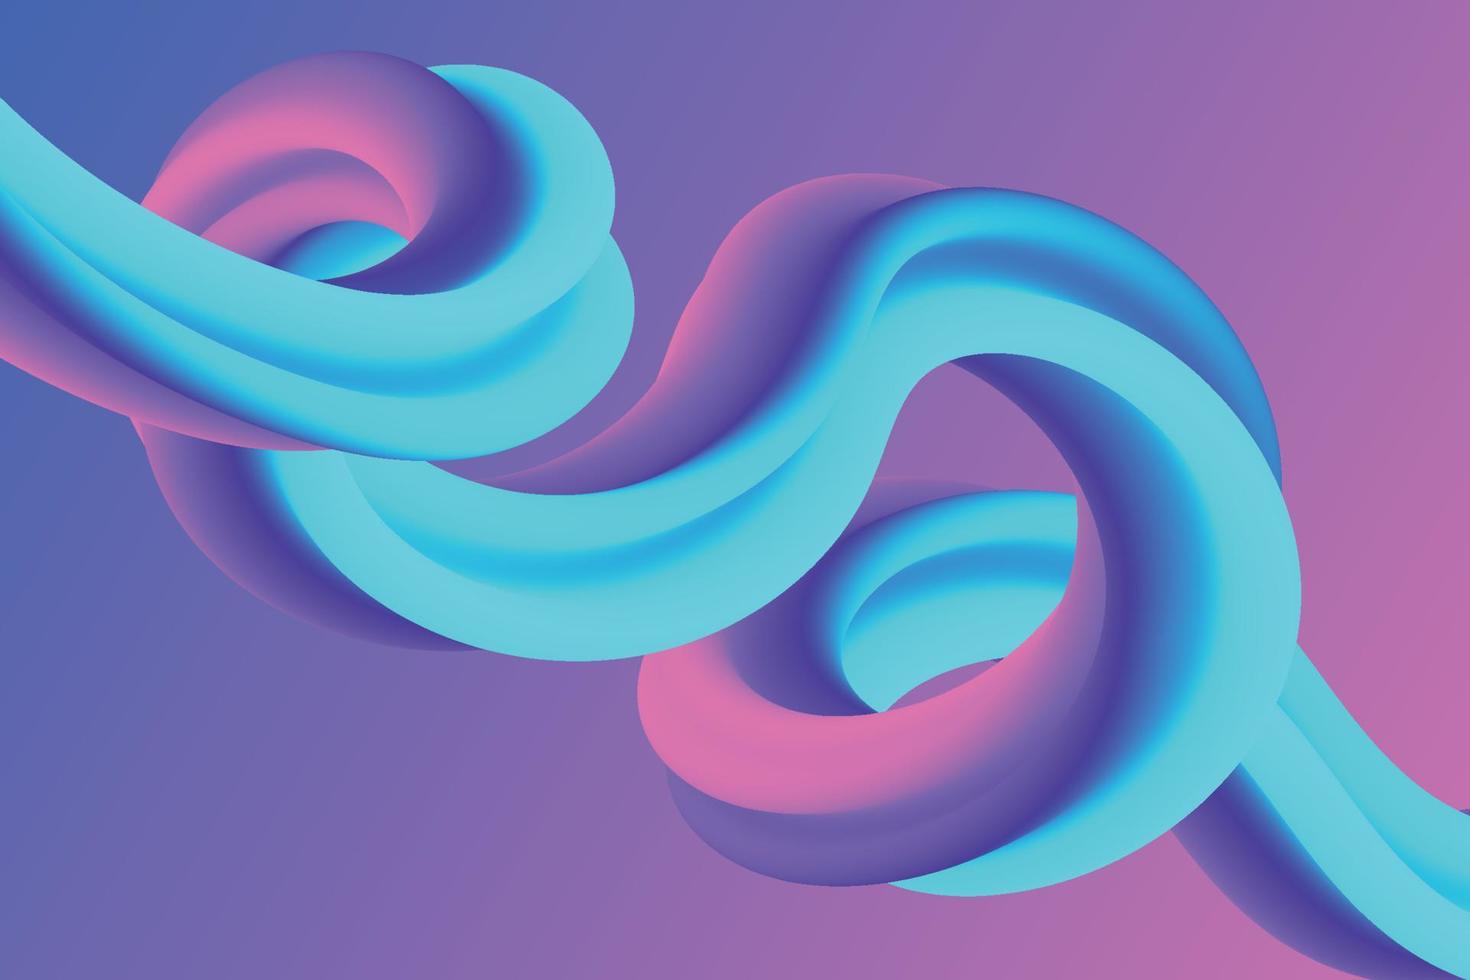 abstrakte neonflüssigkeitsverlaufszusammensetzung. Abbildung der schillernden flüssigen Form. violette und blaue Kurven formen den Hintergrund vektor